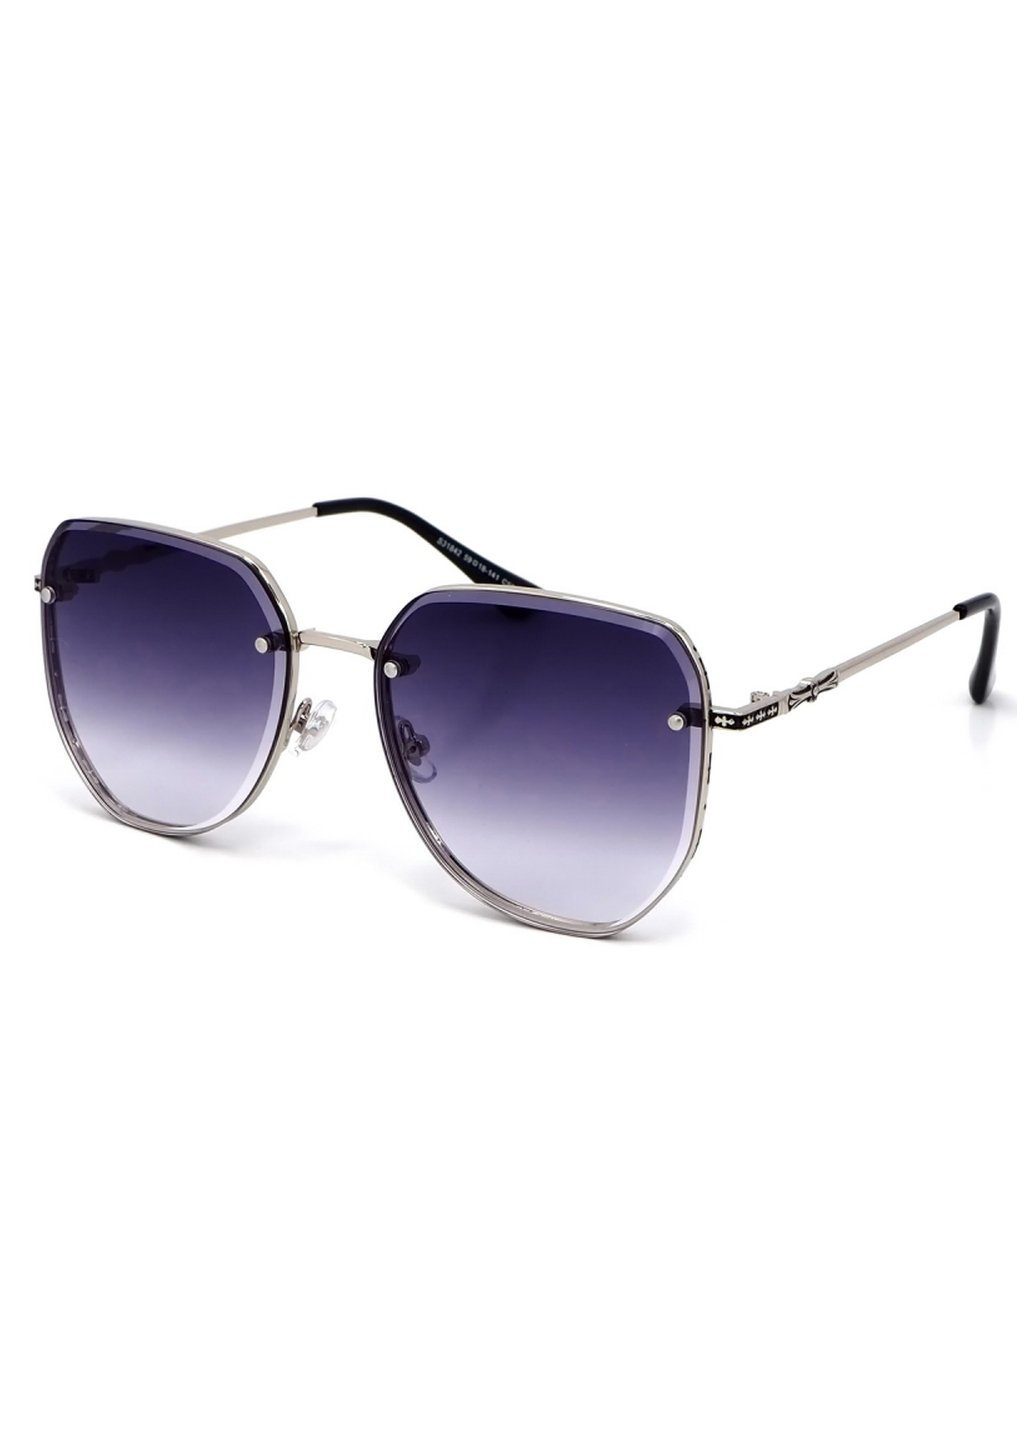 Купить Женские солнцезащитные очки Merlini с поляризацией S31842 117124 - Серебристый в интернет-магазине